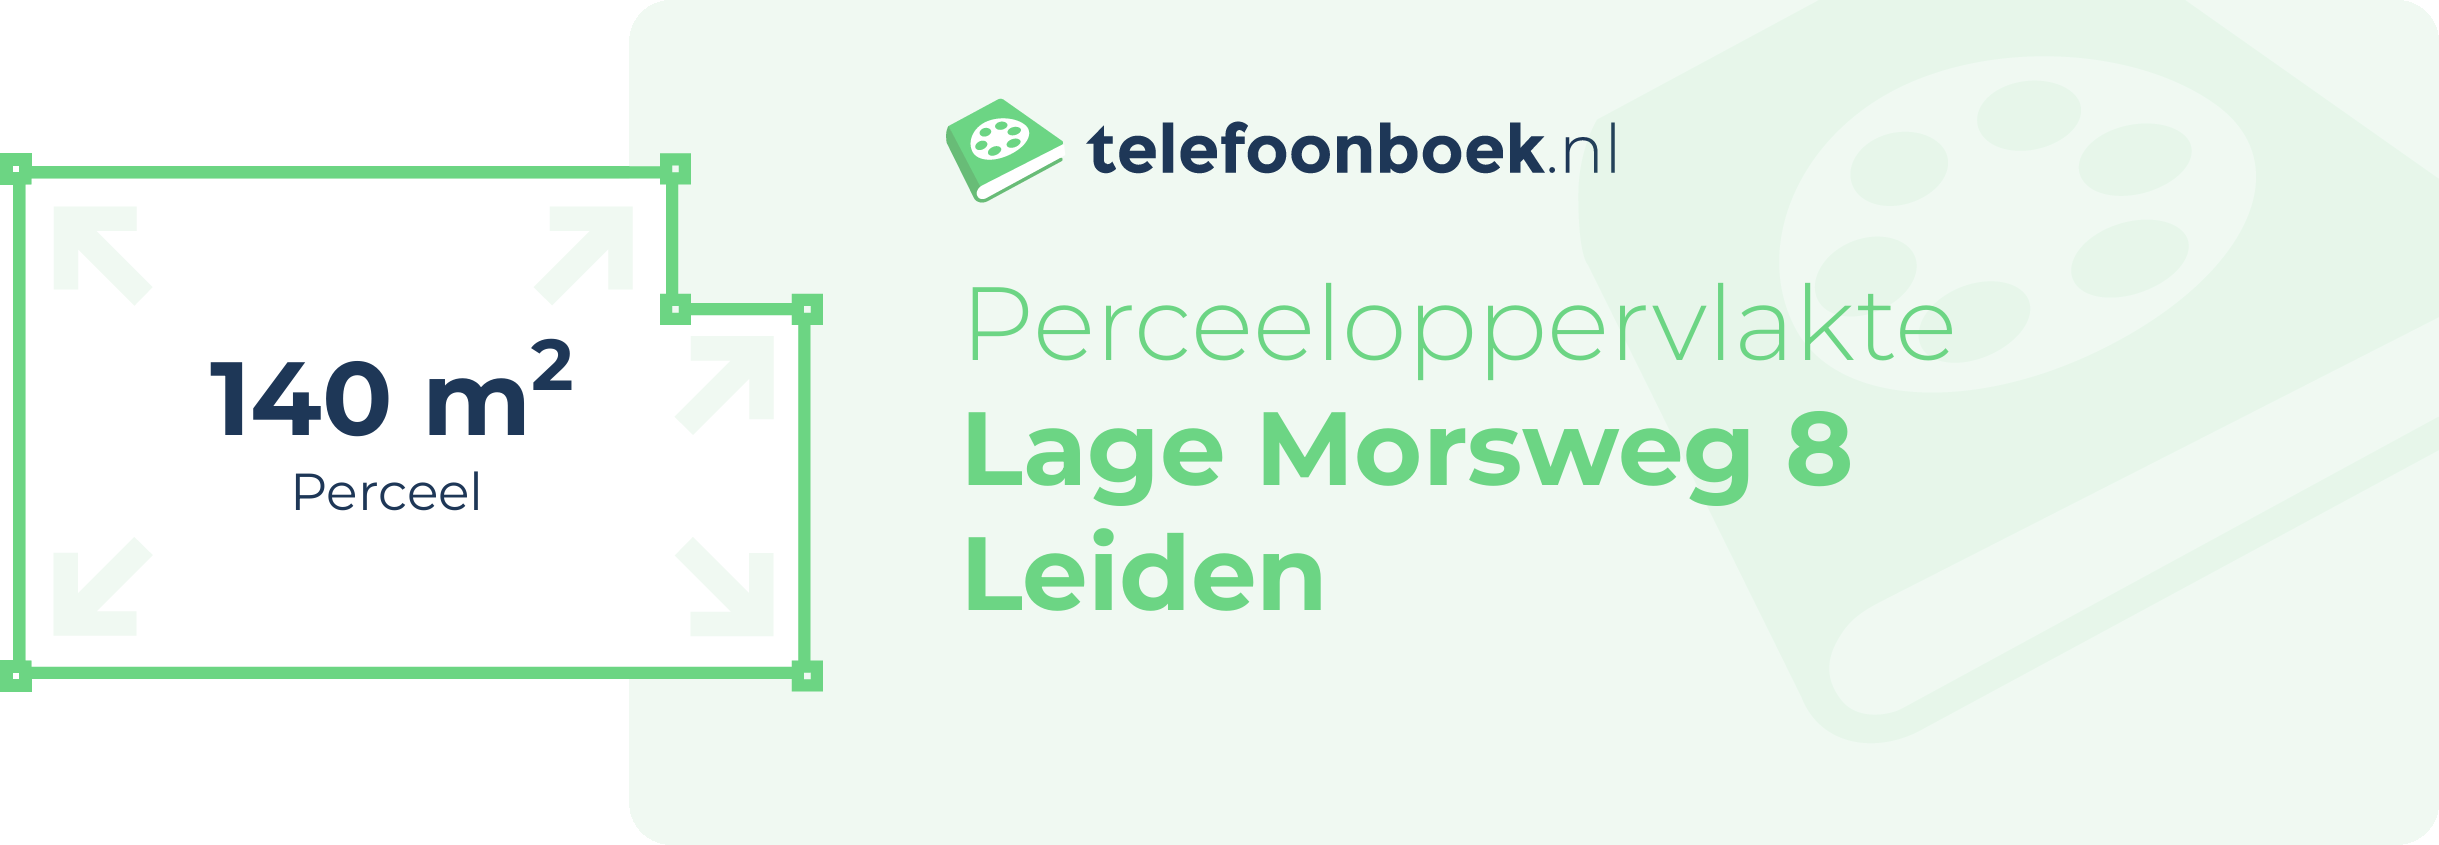 Perceeloppervlakte Lage Morsweg 8 Leiden